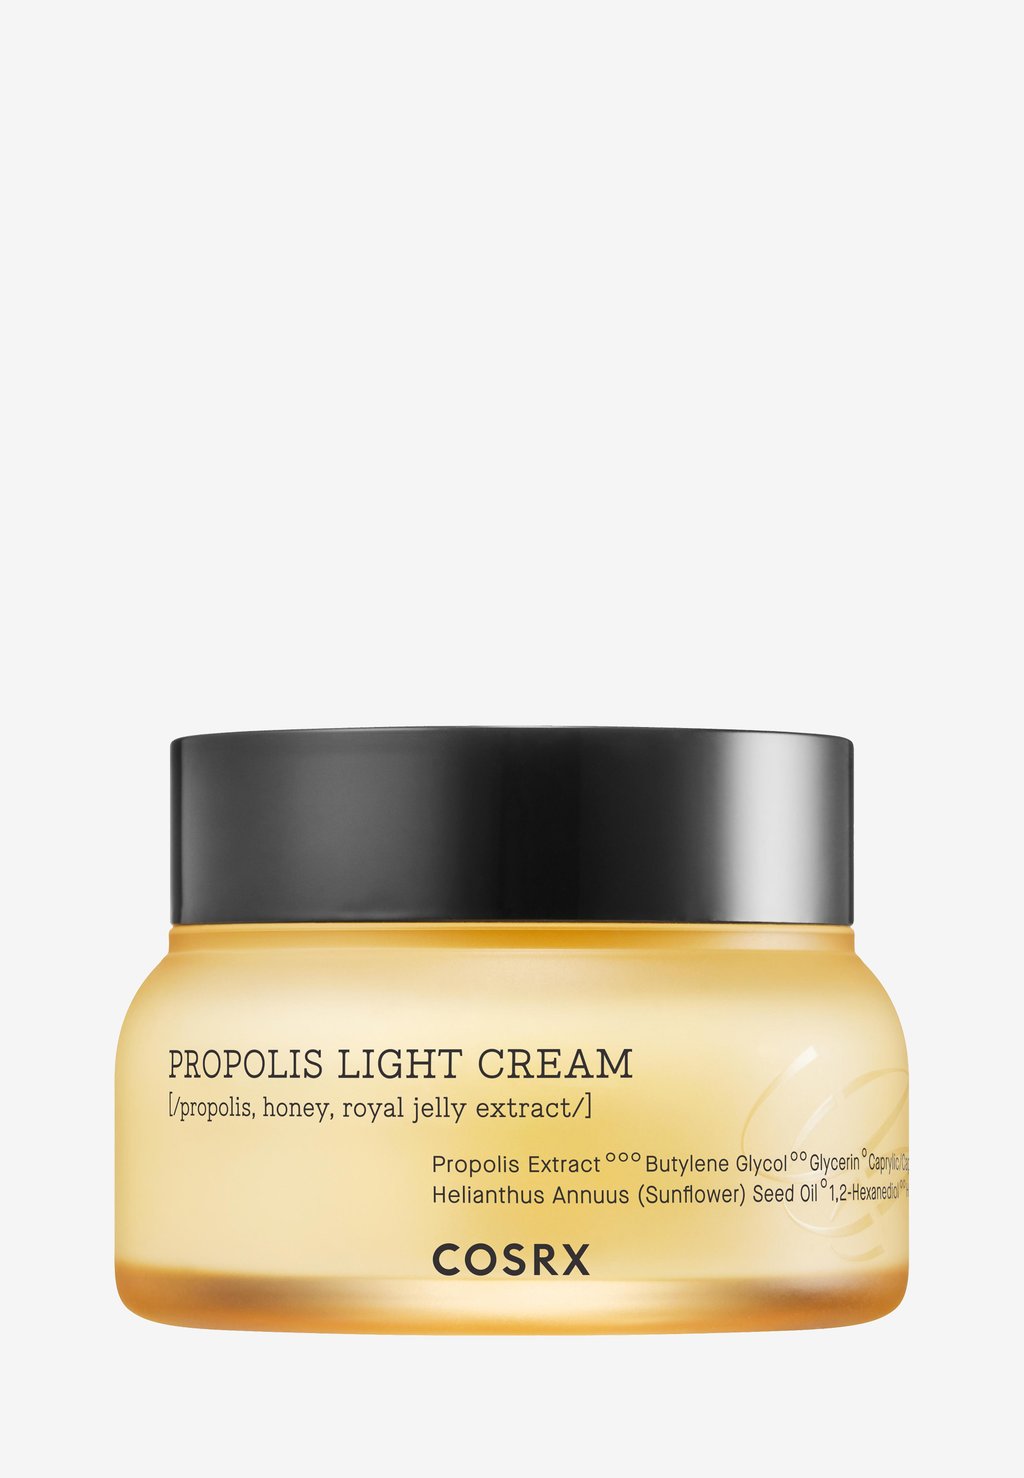 Дневной крем Full Fit Propolis Light Cream COSRX уход за лицом cosrx увлажняющий крем для лица с прополисом full fit propolis light cream